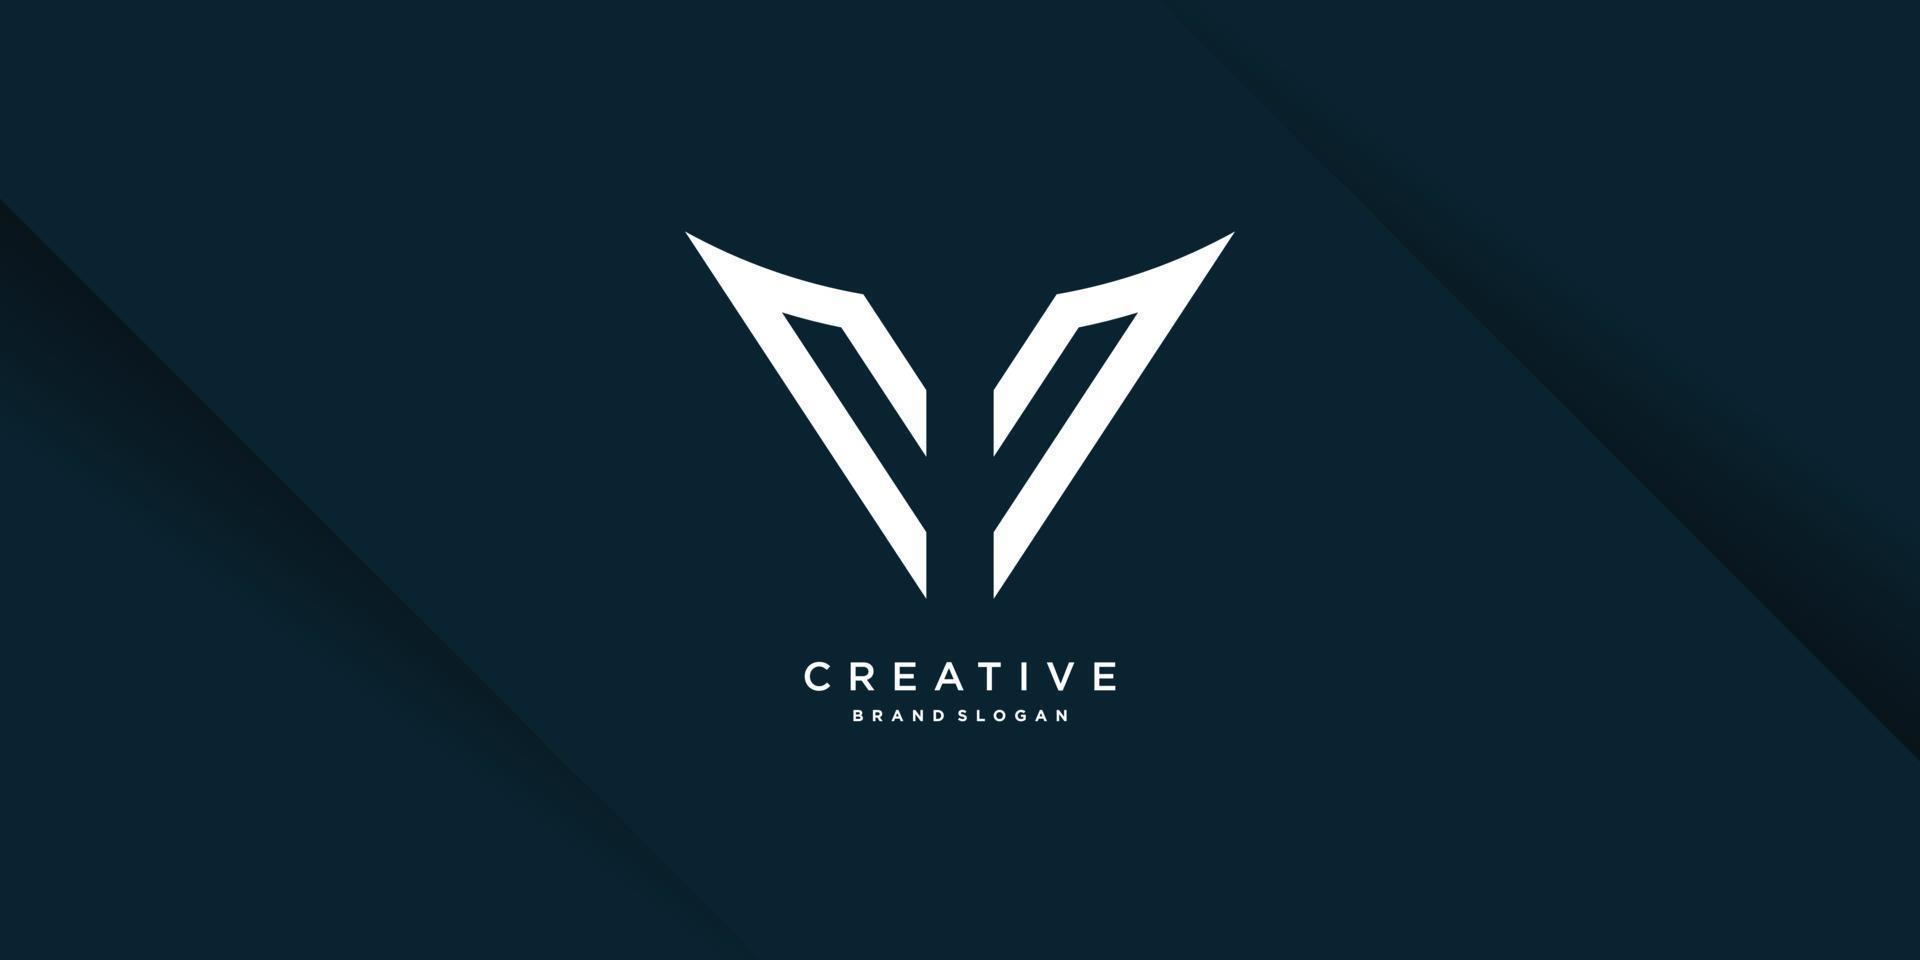 letter logo eerste y met creatief uniek concept premium vectordeel 1 vector